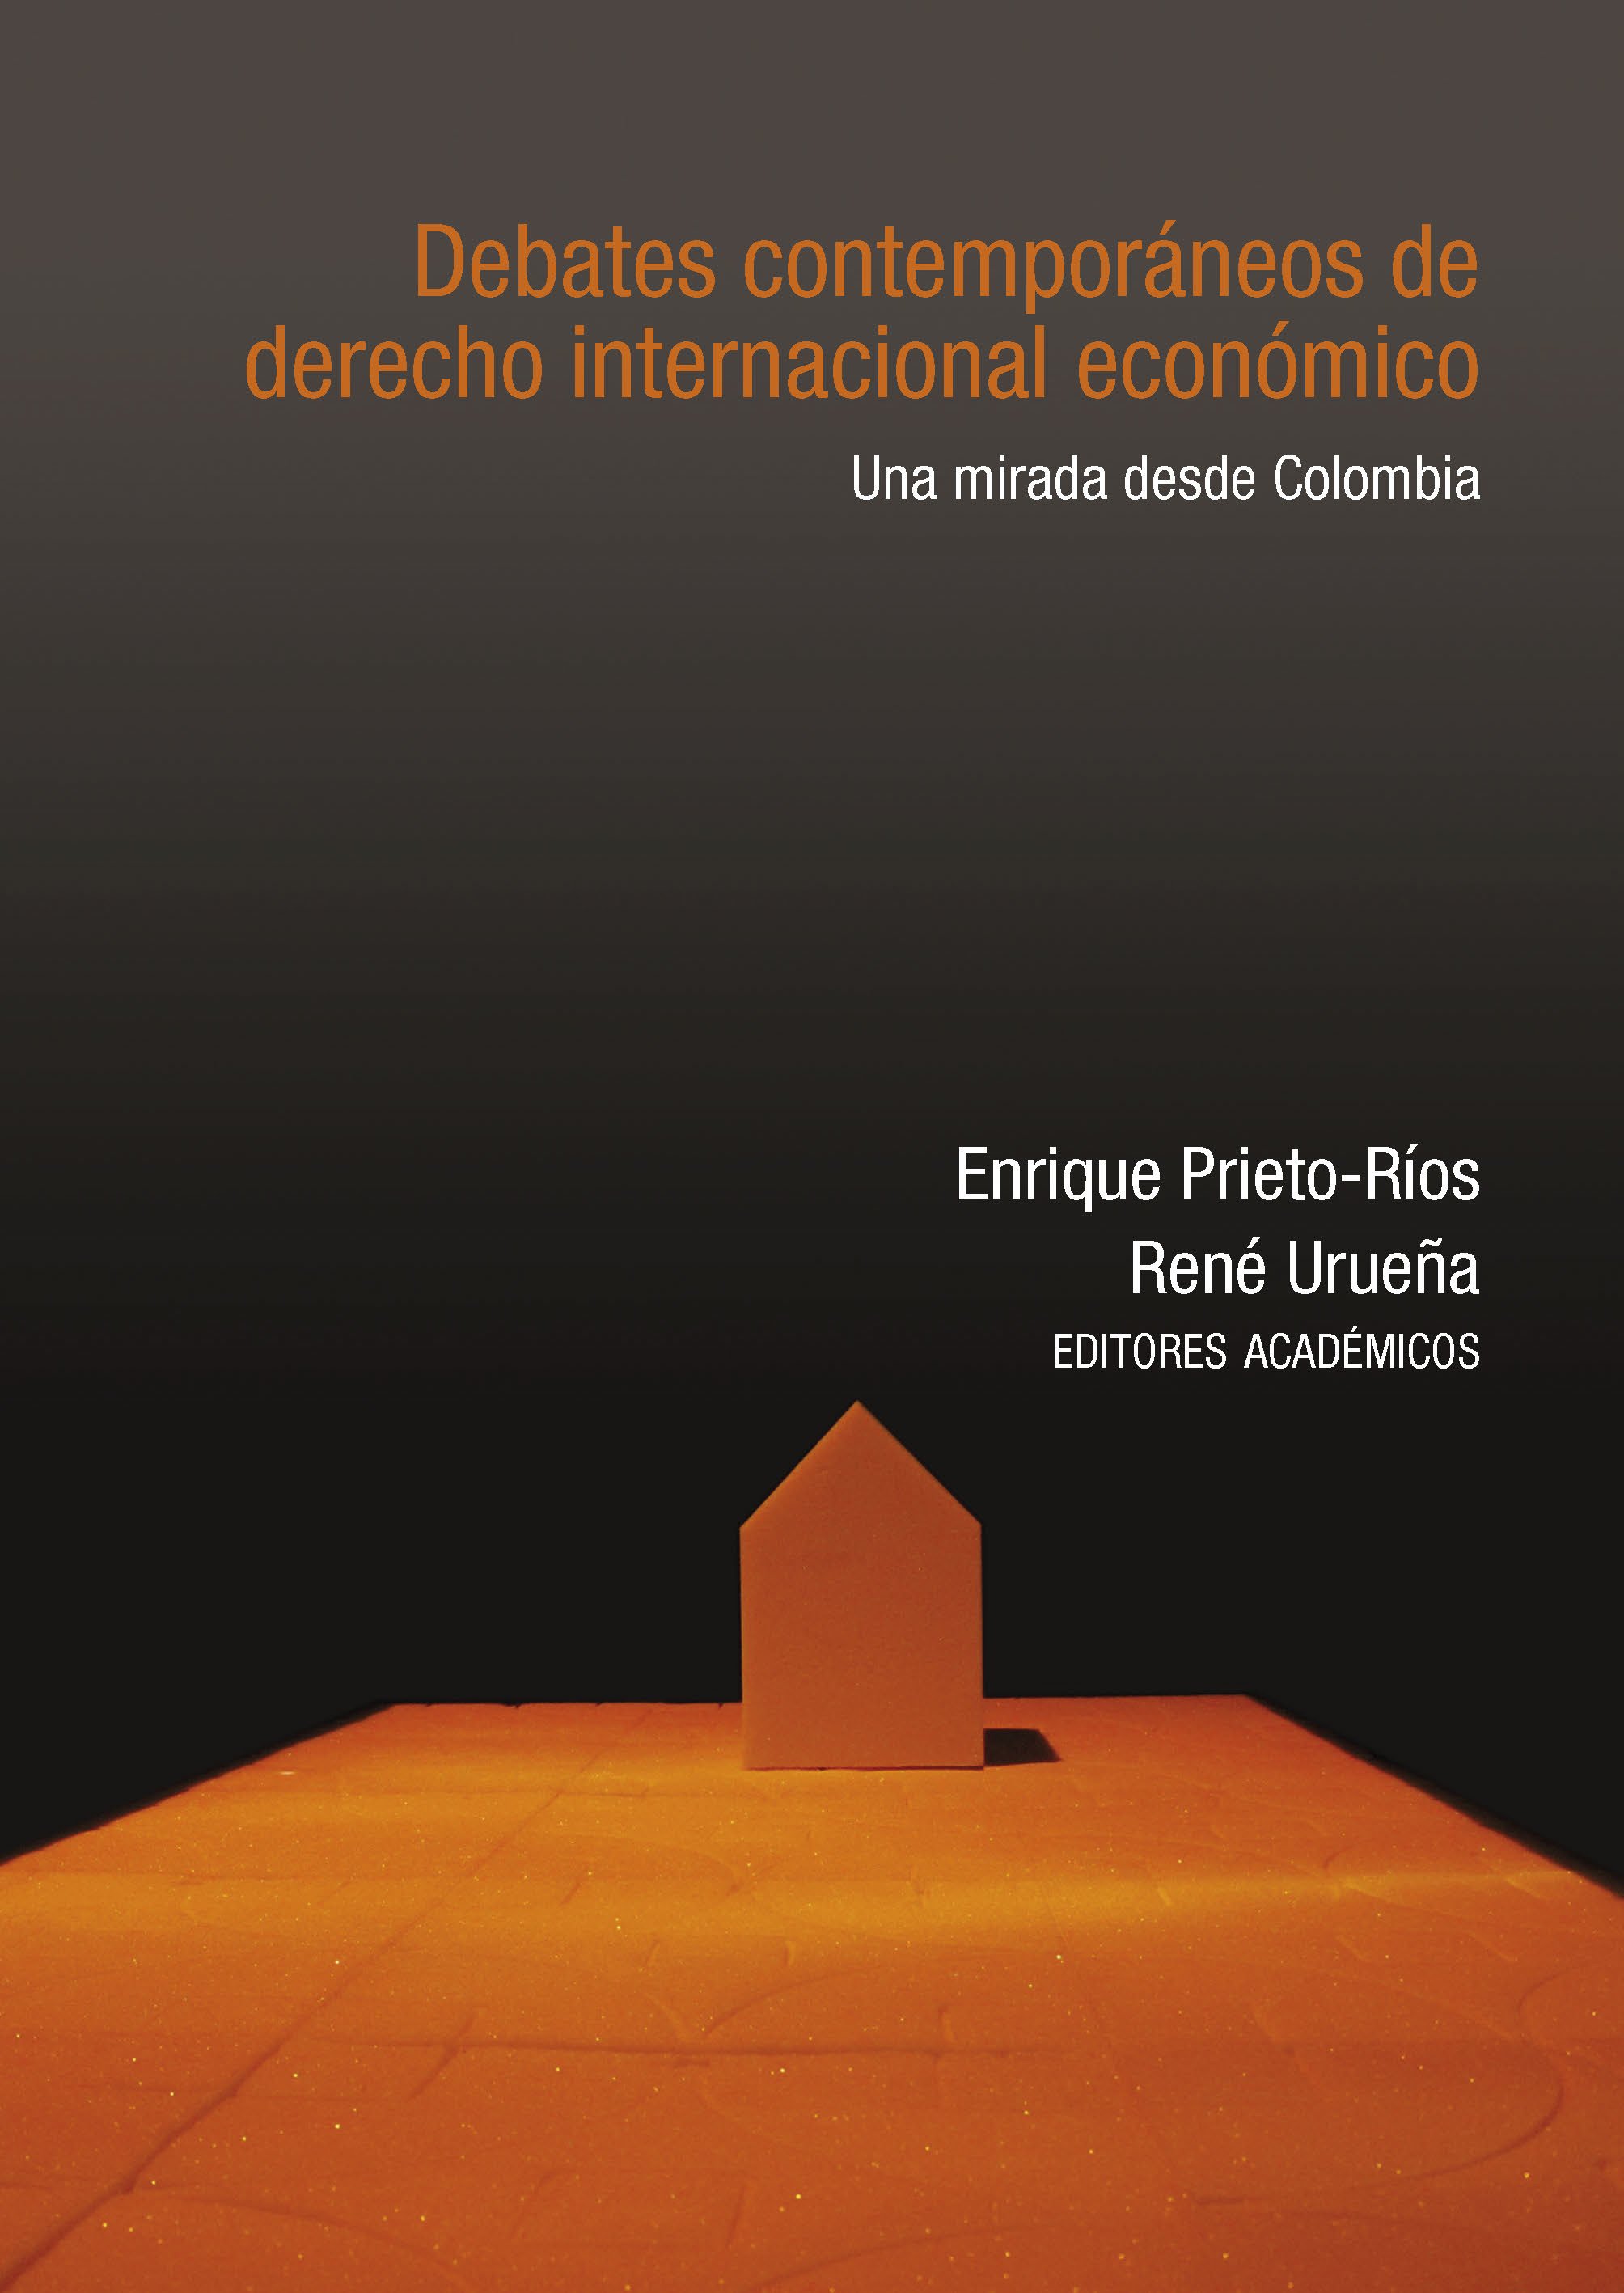 Imagen de portada del libro Debates contemporáneos de derecho internacional económico